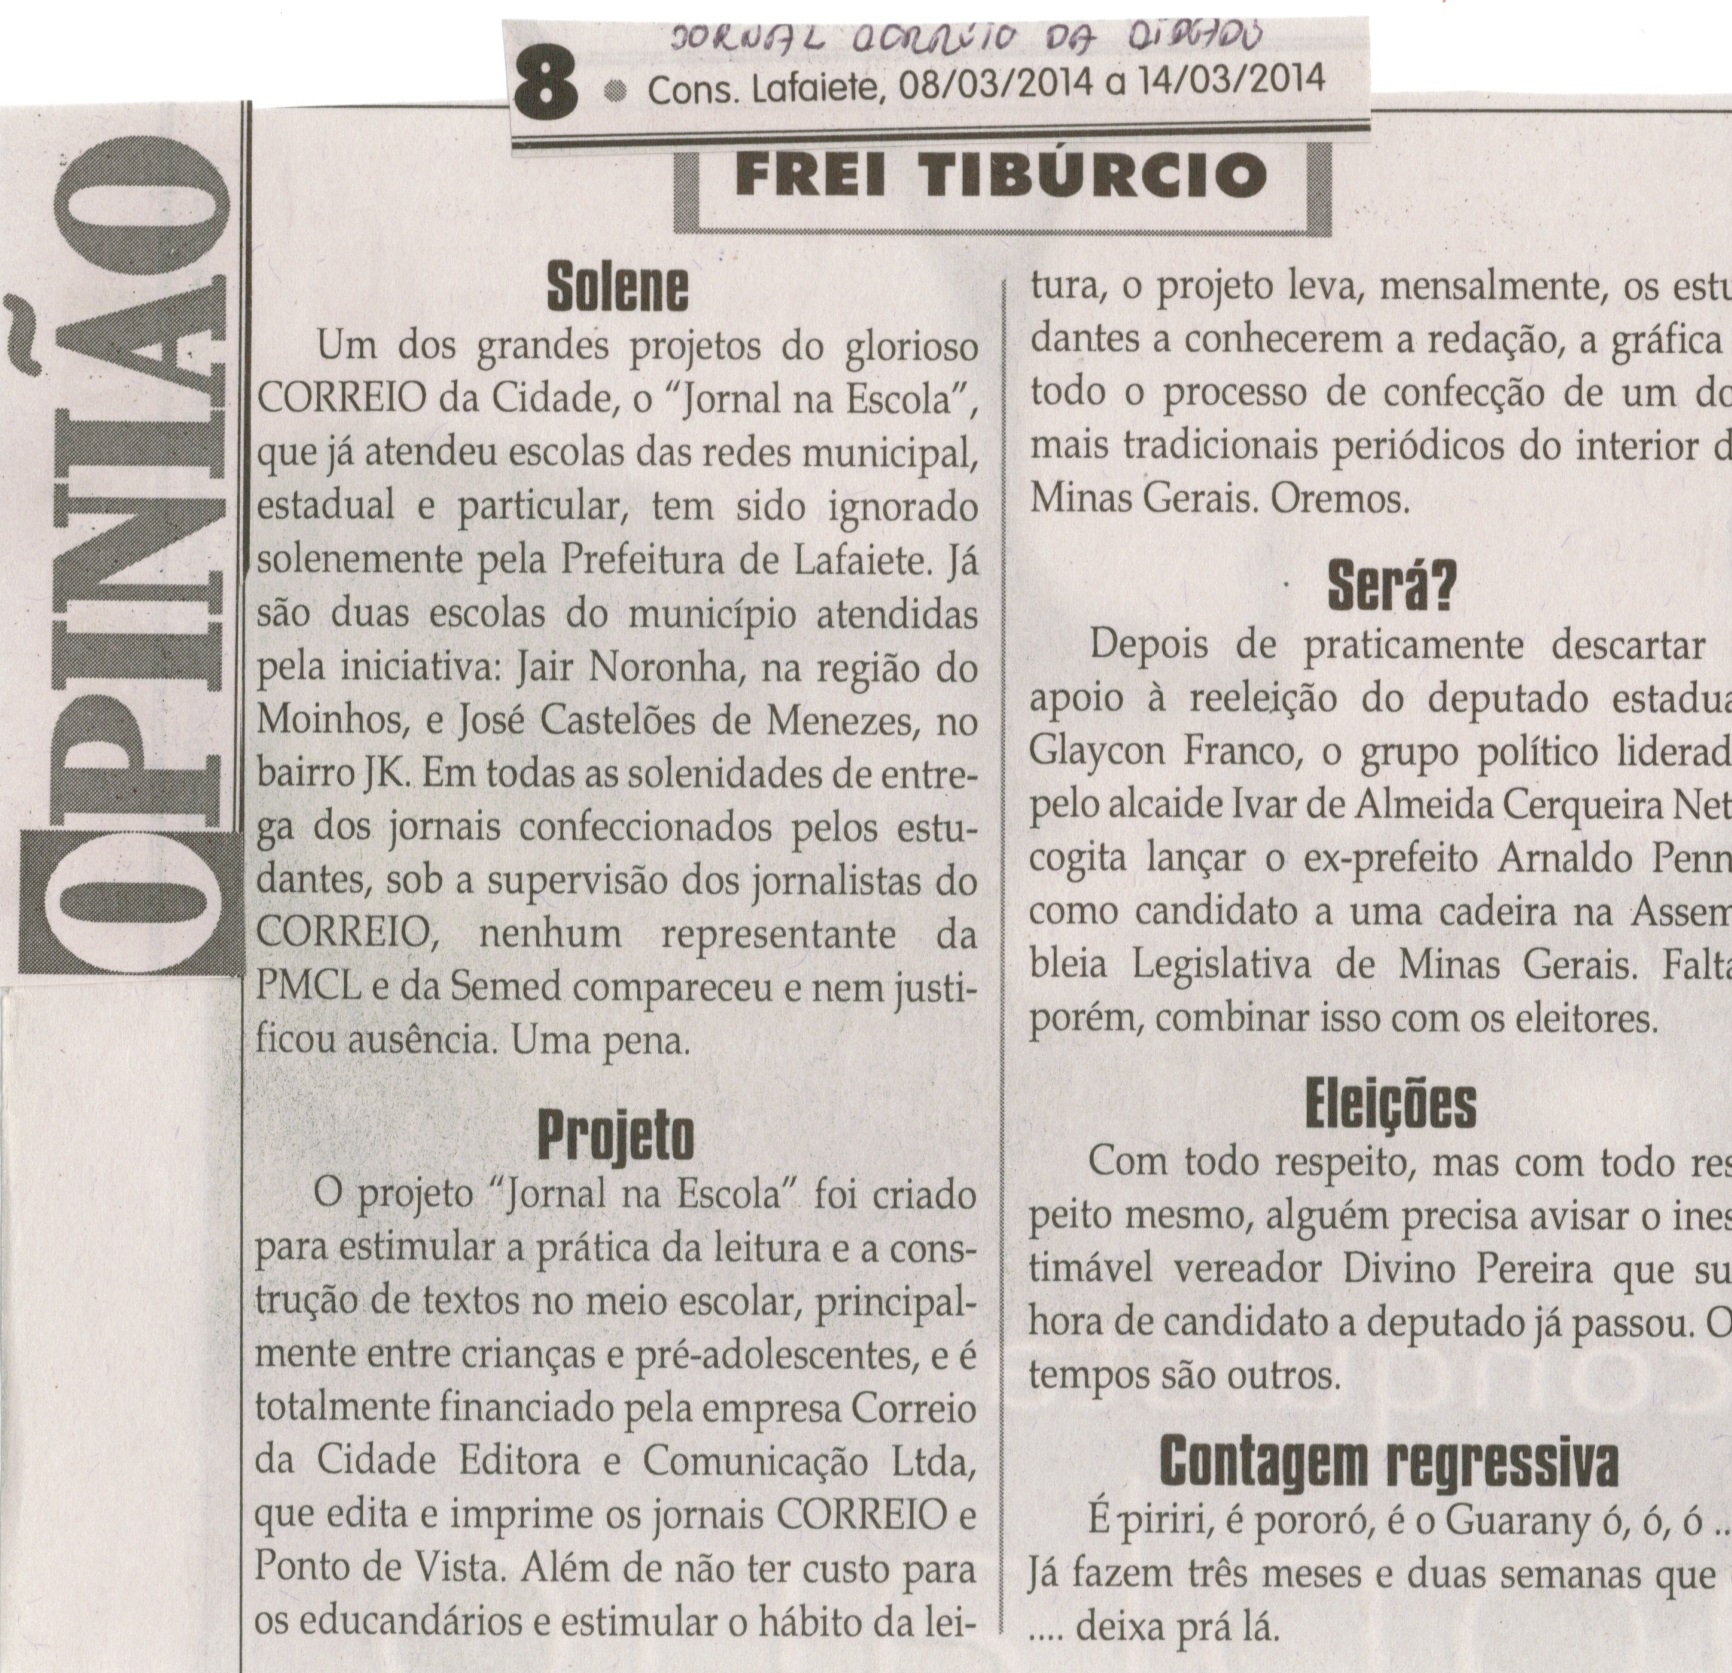 Eleições. Jornal Correio da Cidade, Conselheiro Lafaiete, 14 mar. 2014, Caderno Opinião,Frei Tiburcio, p. 8.